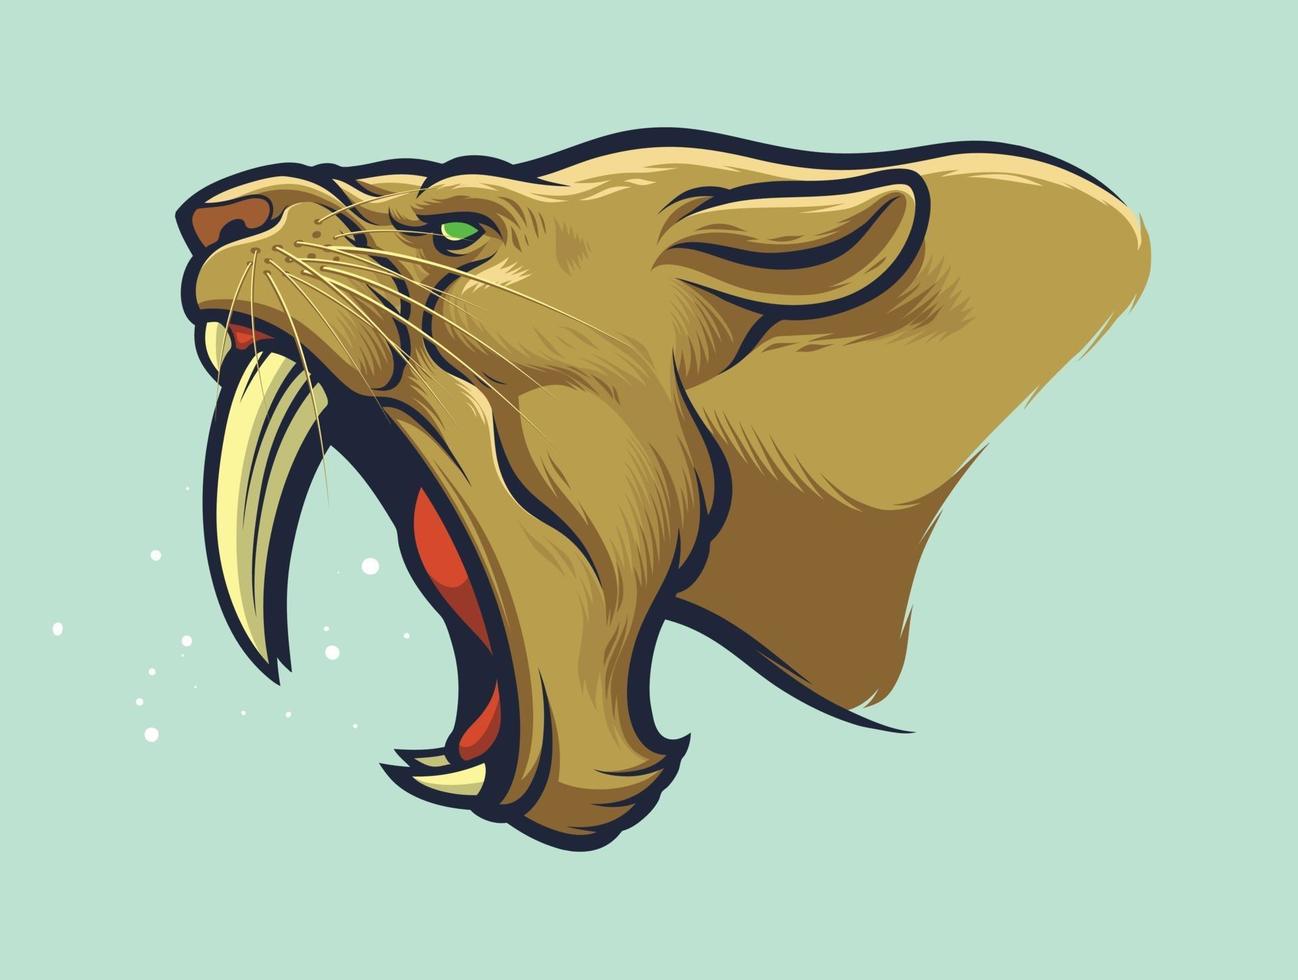 cabeça de tigre dente de sabre para design de patch ou logotipos de equipes esportivas vetor